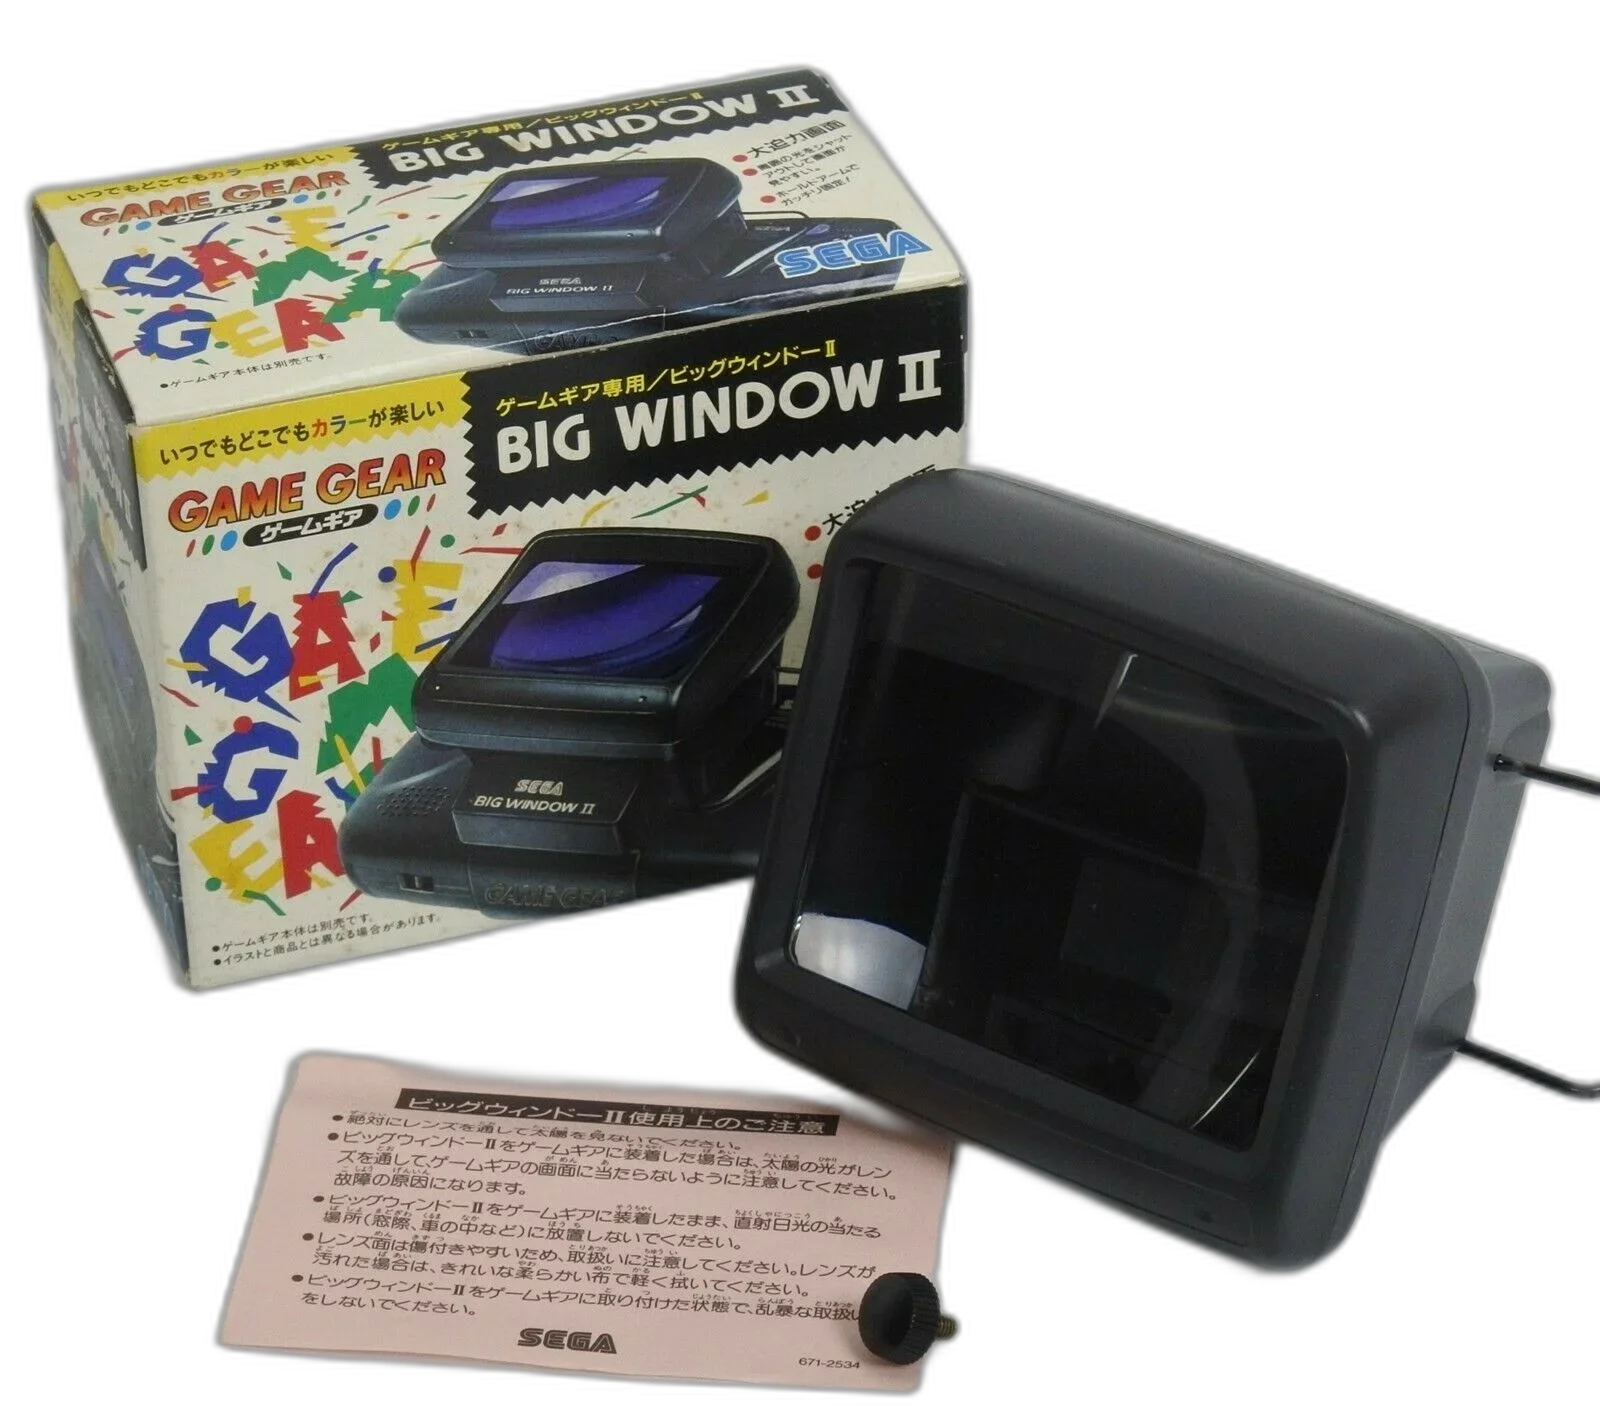  Sega Game Gear Big Window 2